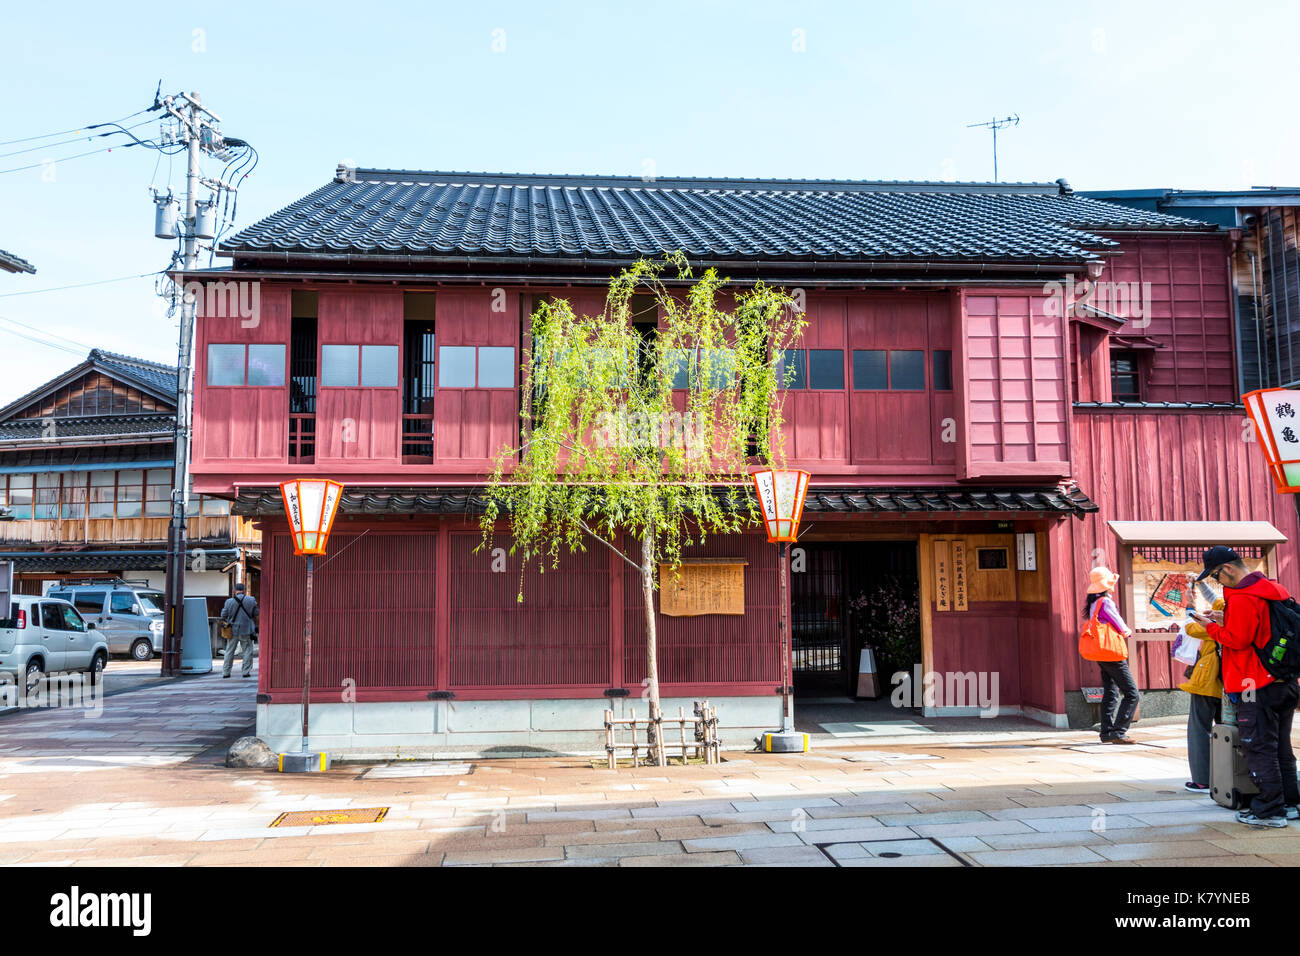 Giappone, Kanazawa, Higashi Chaya. Attrazione turistica, periodo Edo in legno tradizionale a due piani merchant house, dipinto di viola, piccola willow all'esterno. Foto Stock